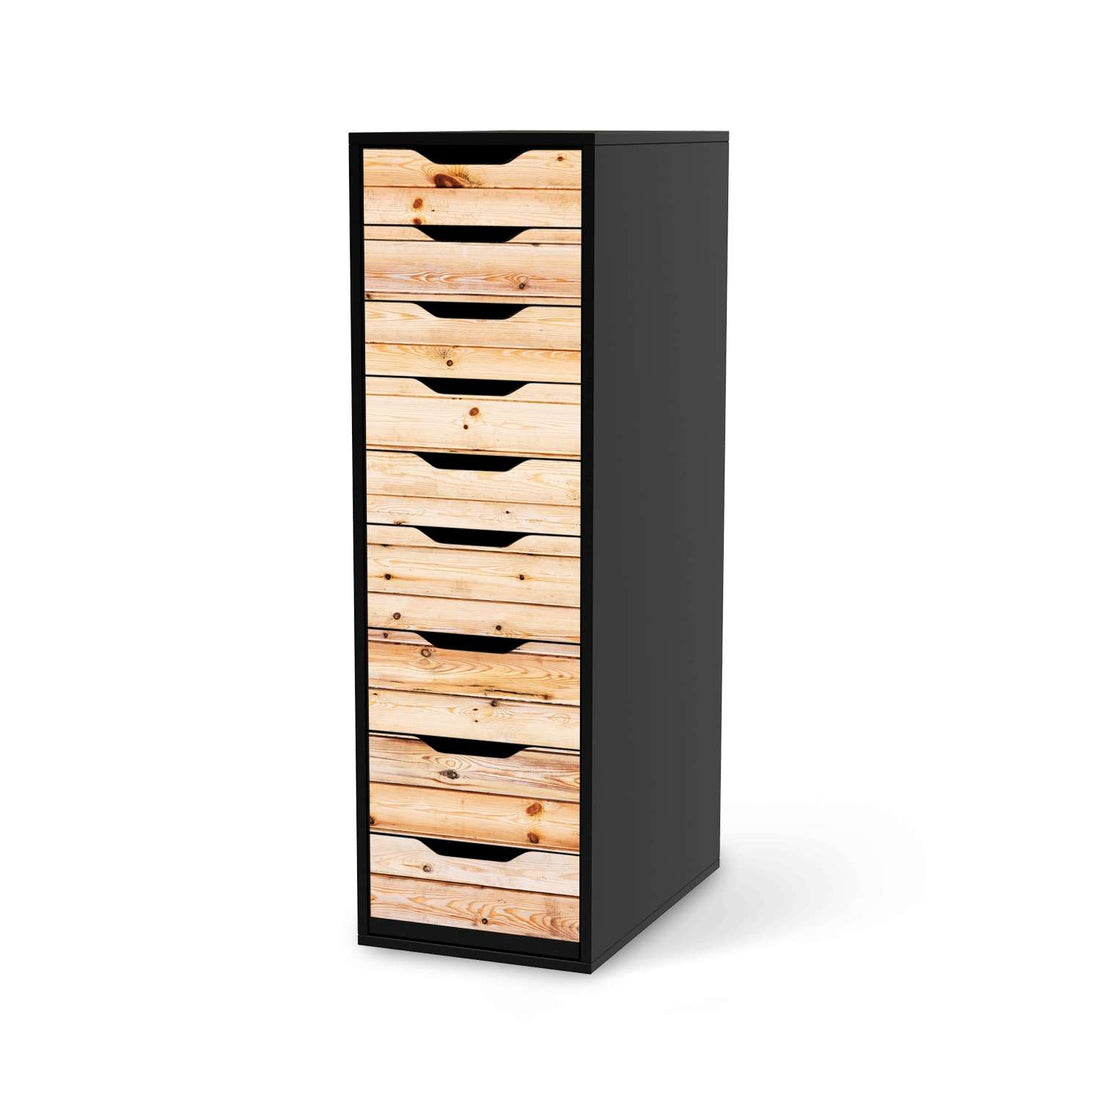 Folie für Möbel Bright Planks - IKEA Alex 9 Schubladen - schwarz